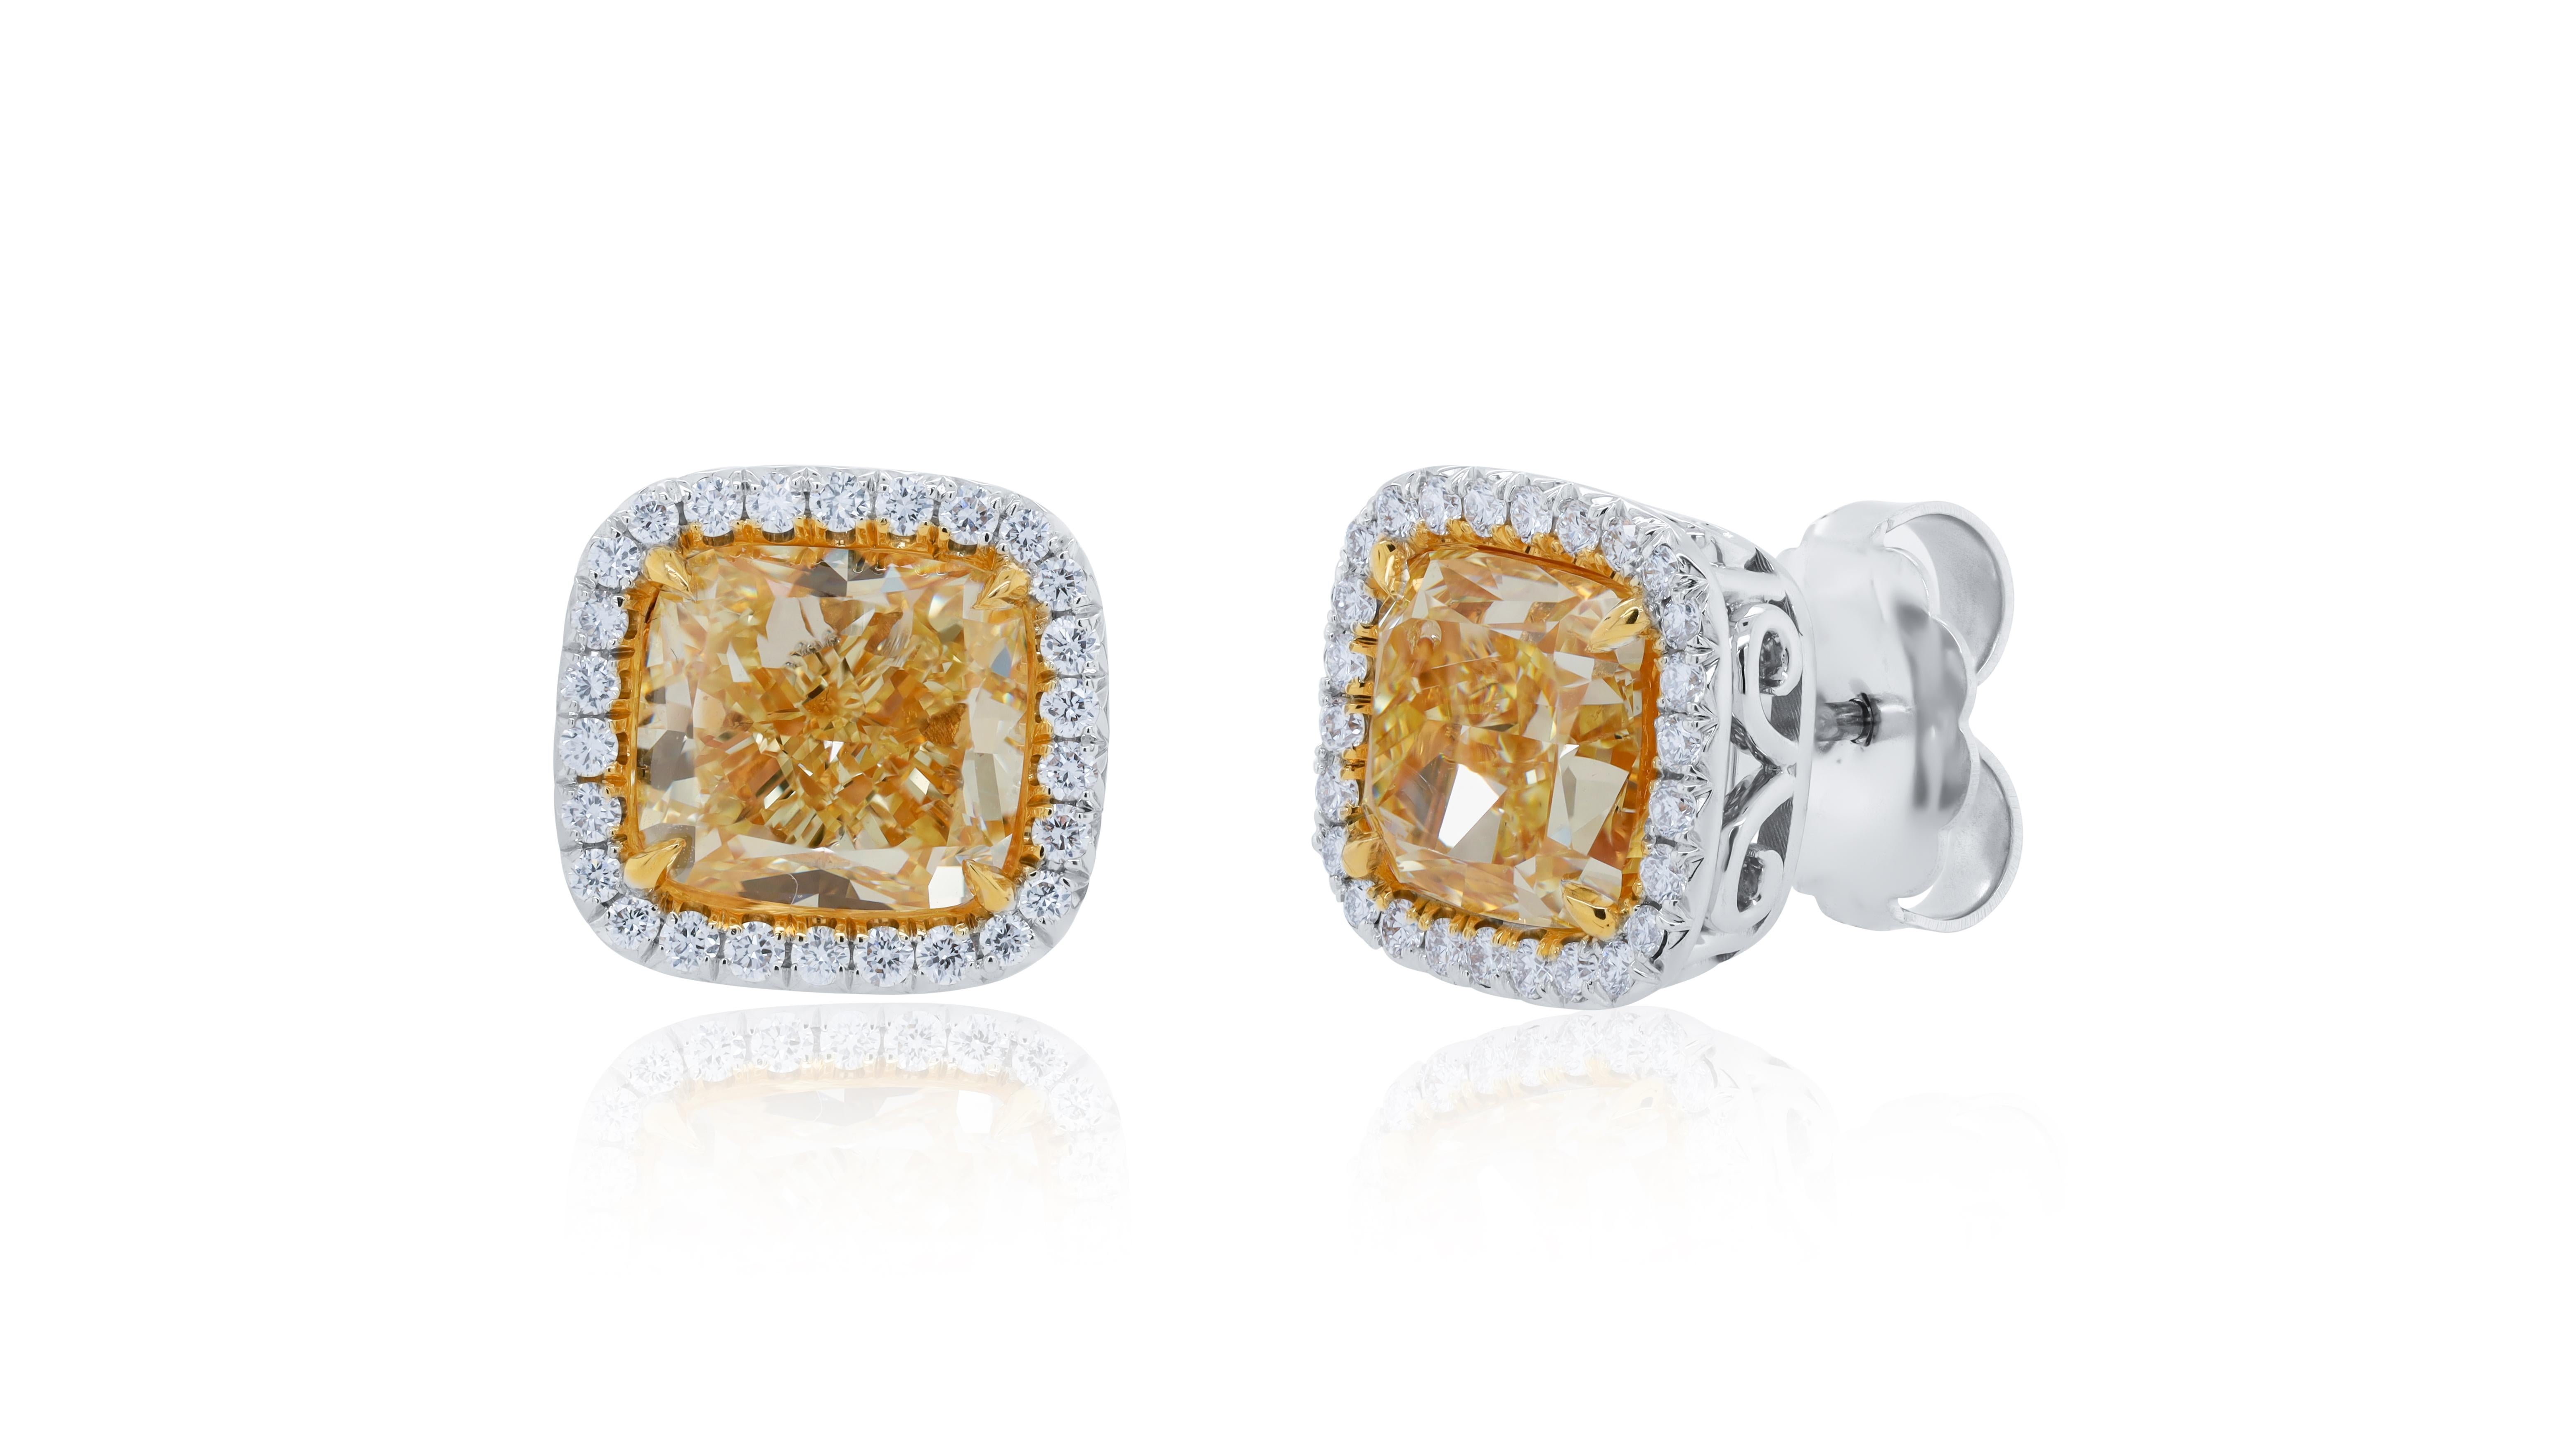 18KT Platin Diamant Ohrstecker, Merkmale 4.00 + 4.02ct  mit 2 GIA-zertifizierten geschliffenen Diamanten fancy yellow VS1-VS2 in einem Diamant-Halo .60cts von Diamanten an den Seiten.
Diana M. ist seit über 35 Jahren ein führender Anbieter von